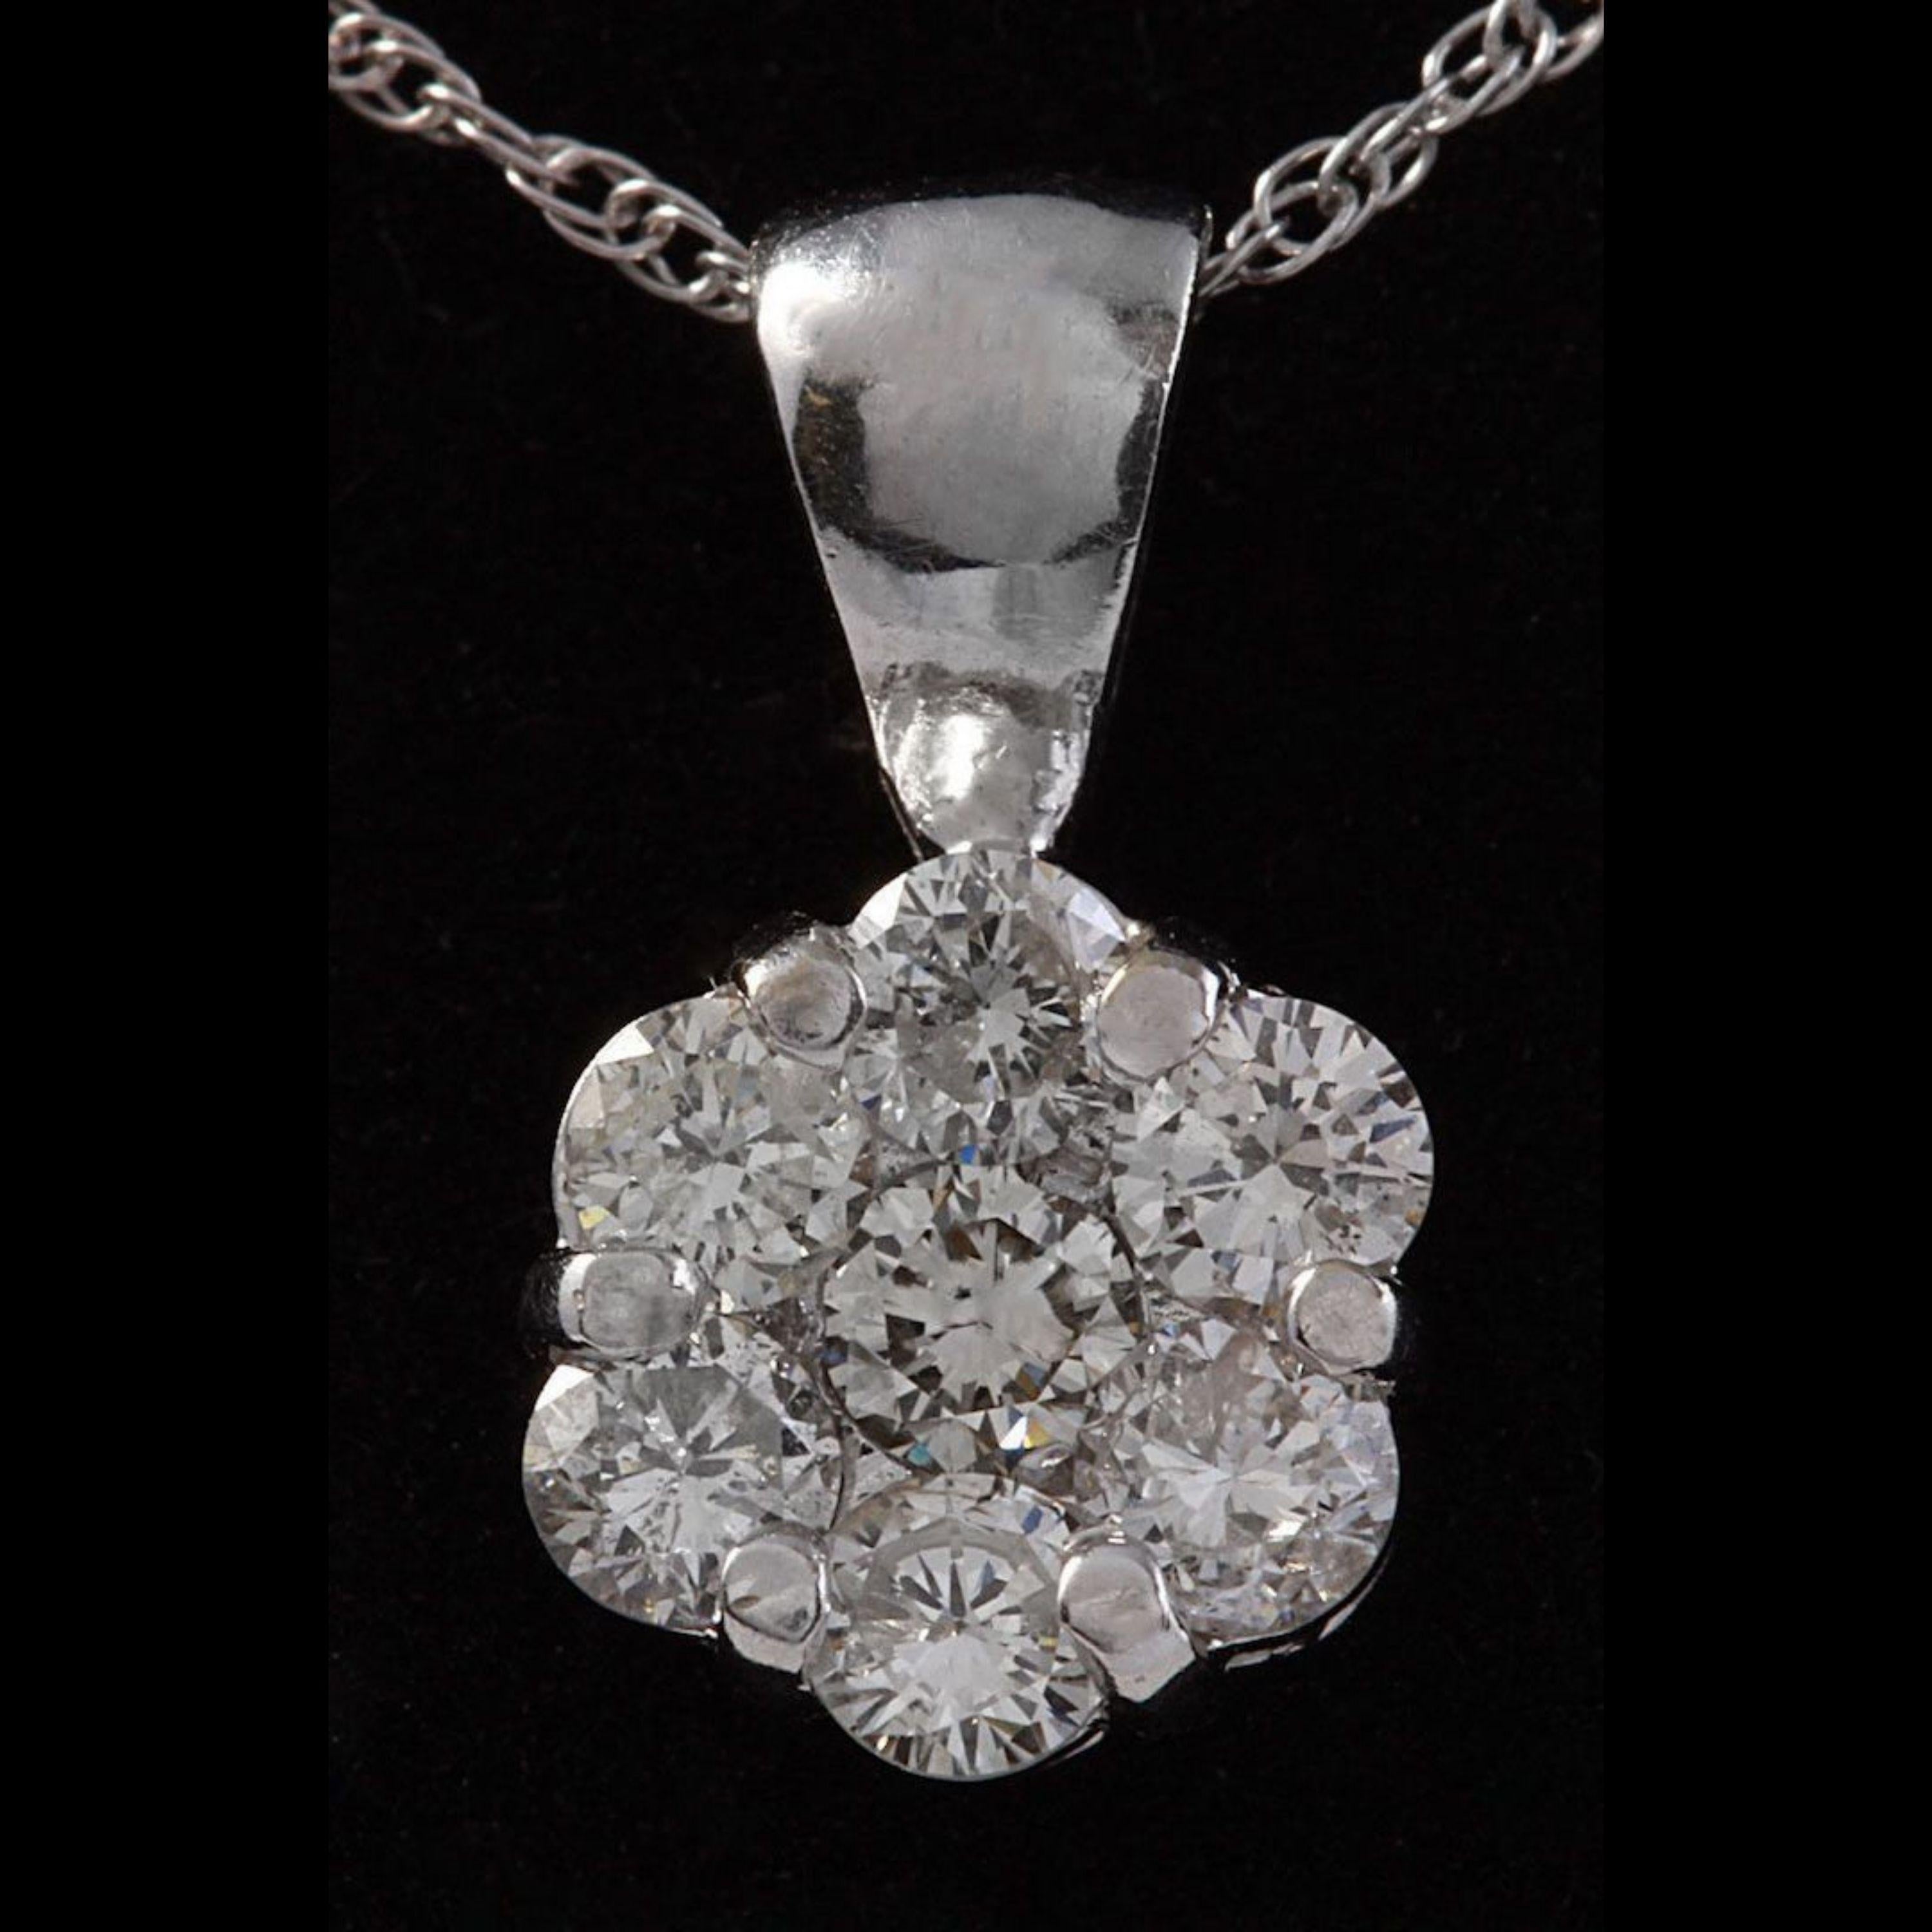 88 carat diamond necklace